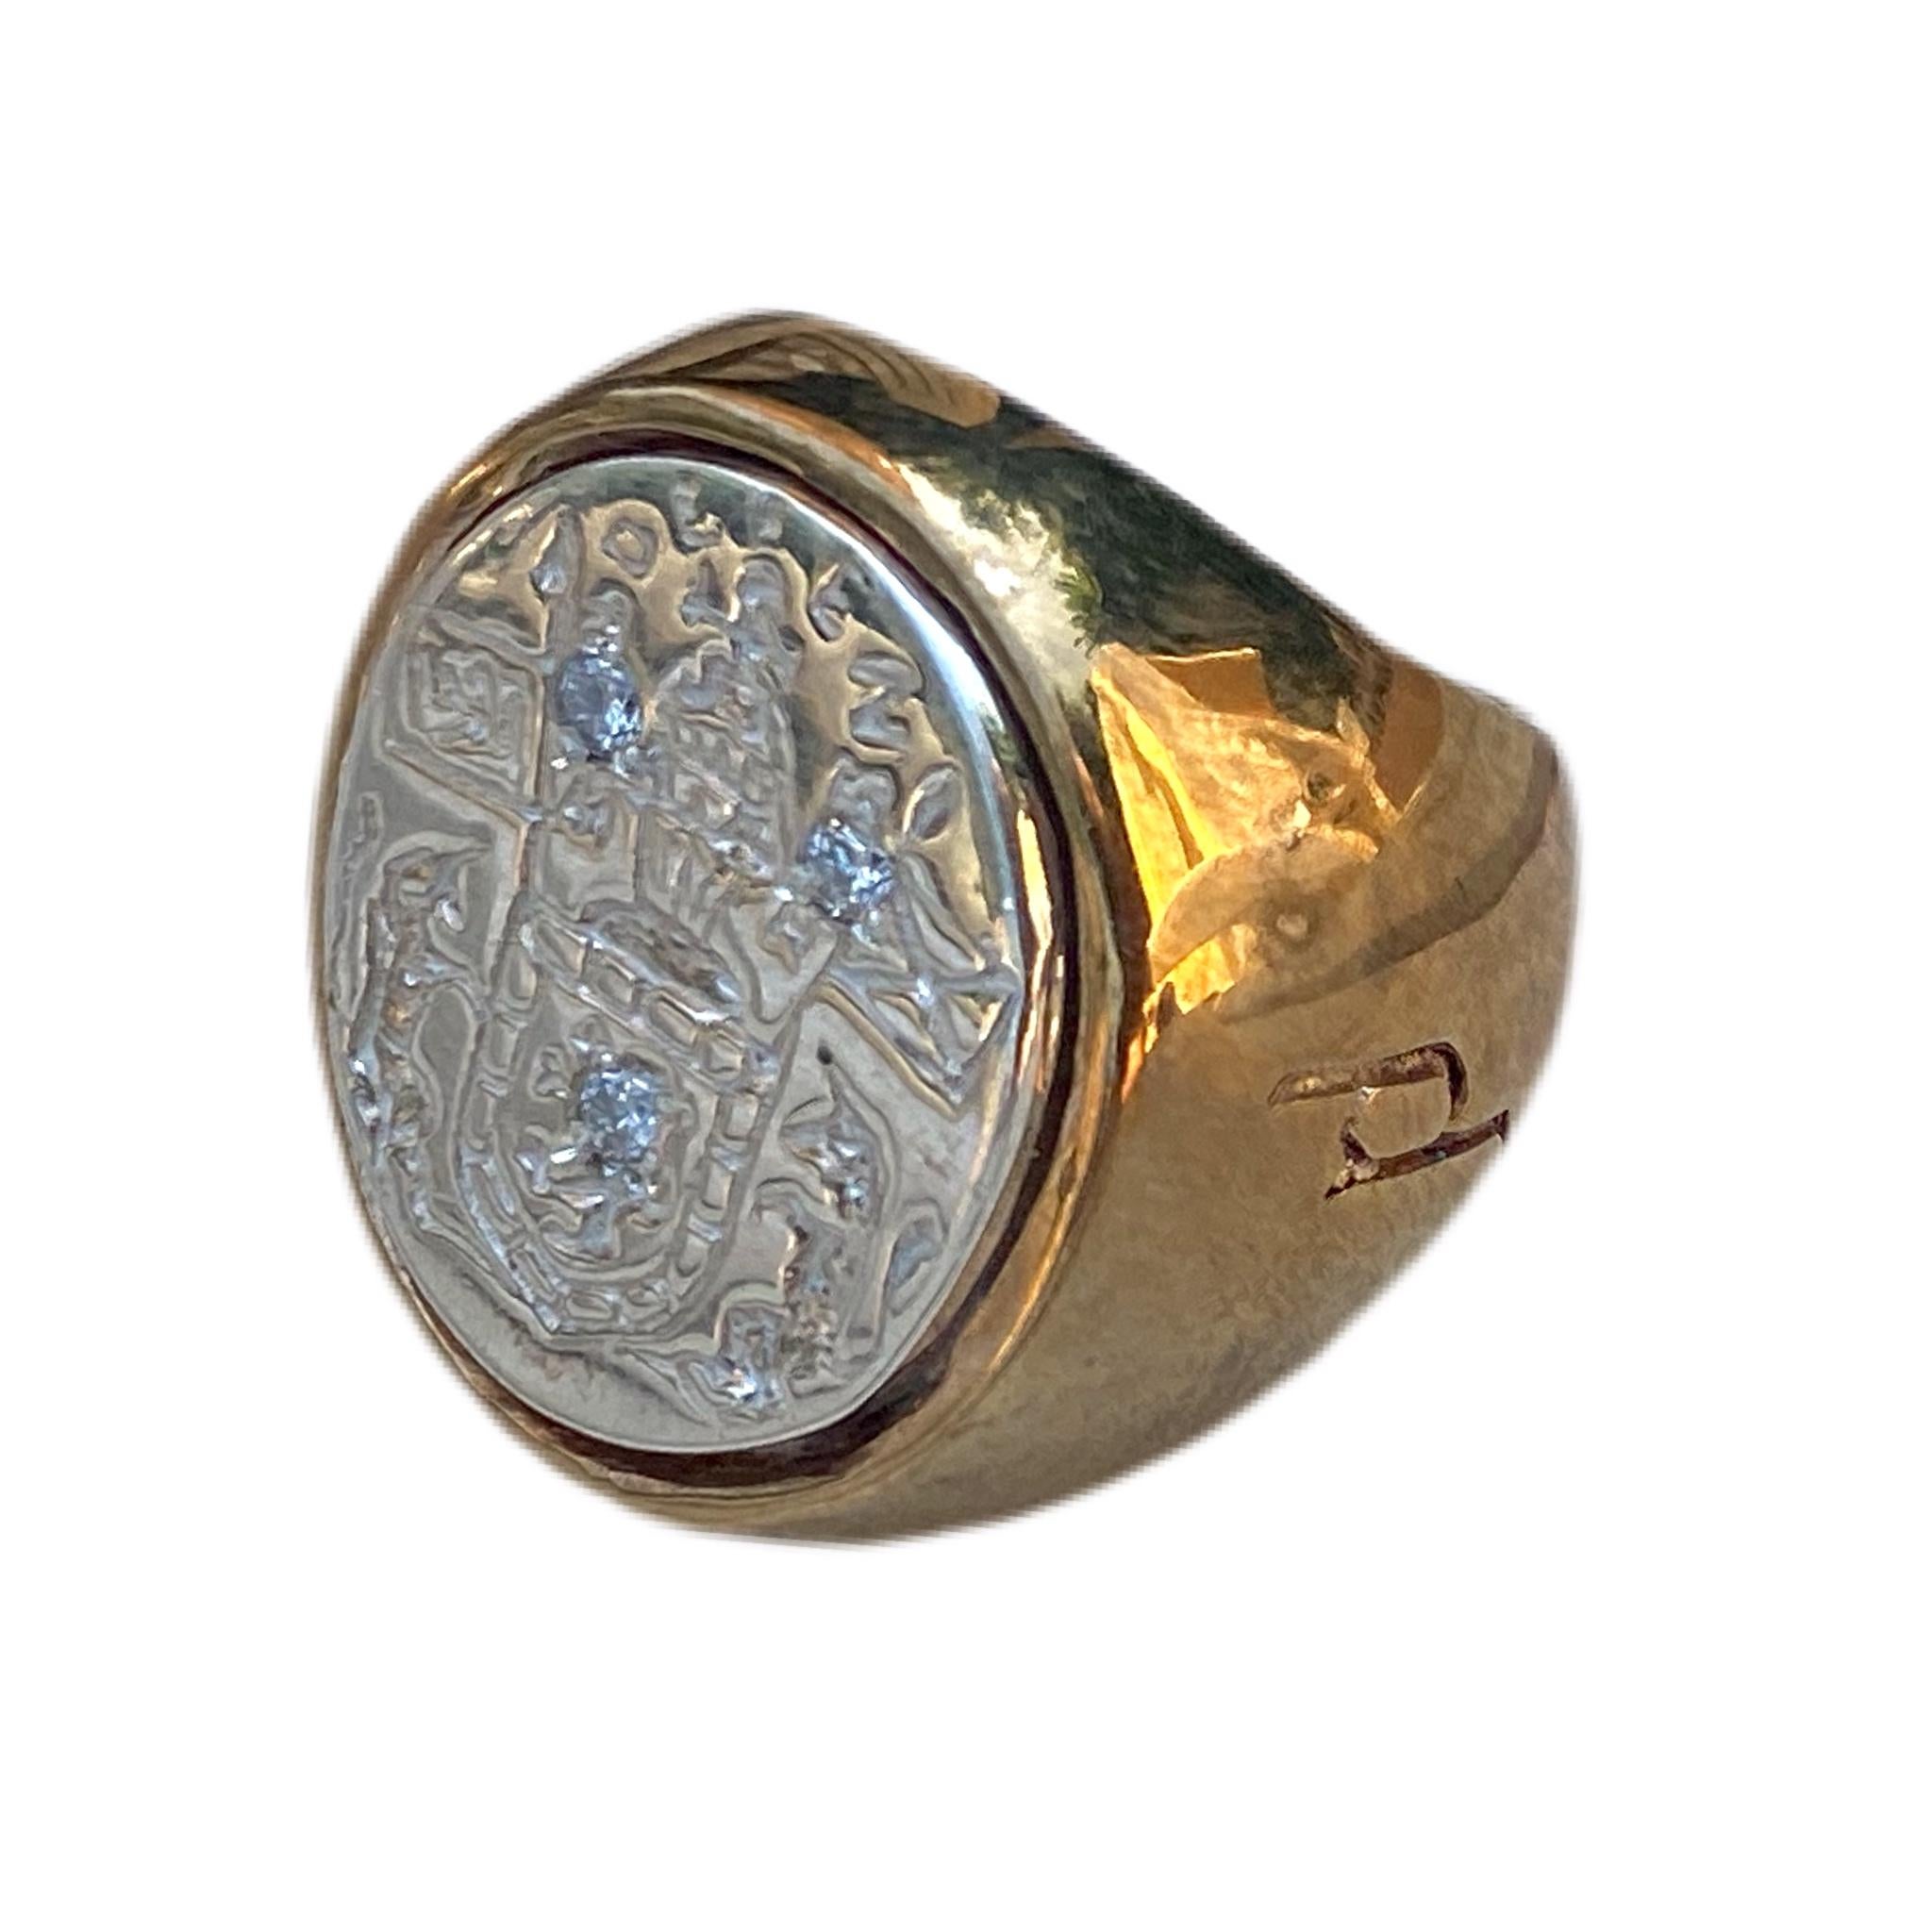 3 Stück Crest Siegelring Sterling Silber Bronze Weiß Diamant Unisex J DAUPHIN kann von Frauen oder Männern getragen werden.

Inspiriert durch den Ring der Königin Maria von Schottland. Goldener Siegelring; graviert; Schultern mit Blumen und Blättern